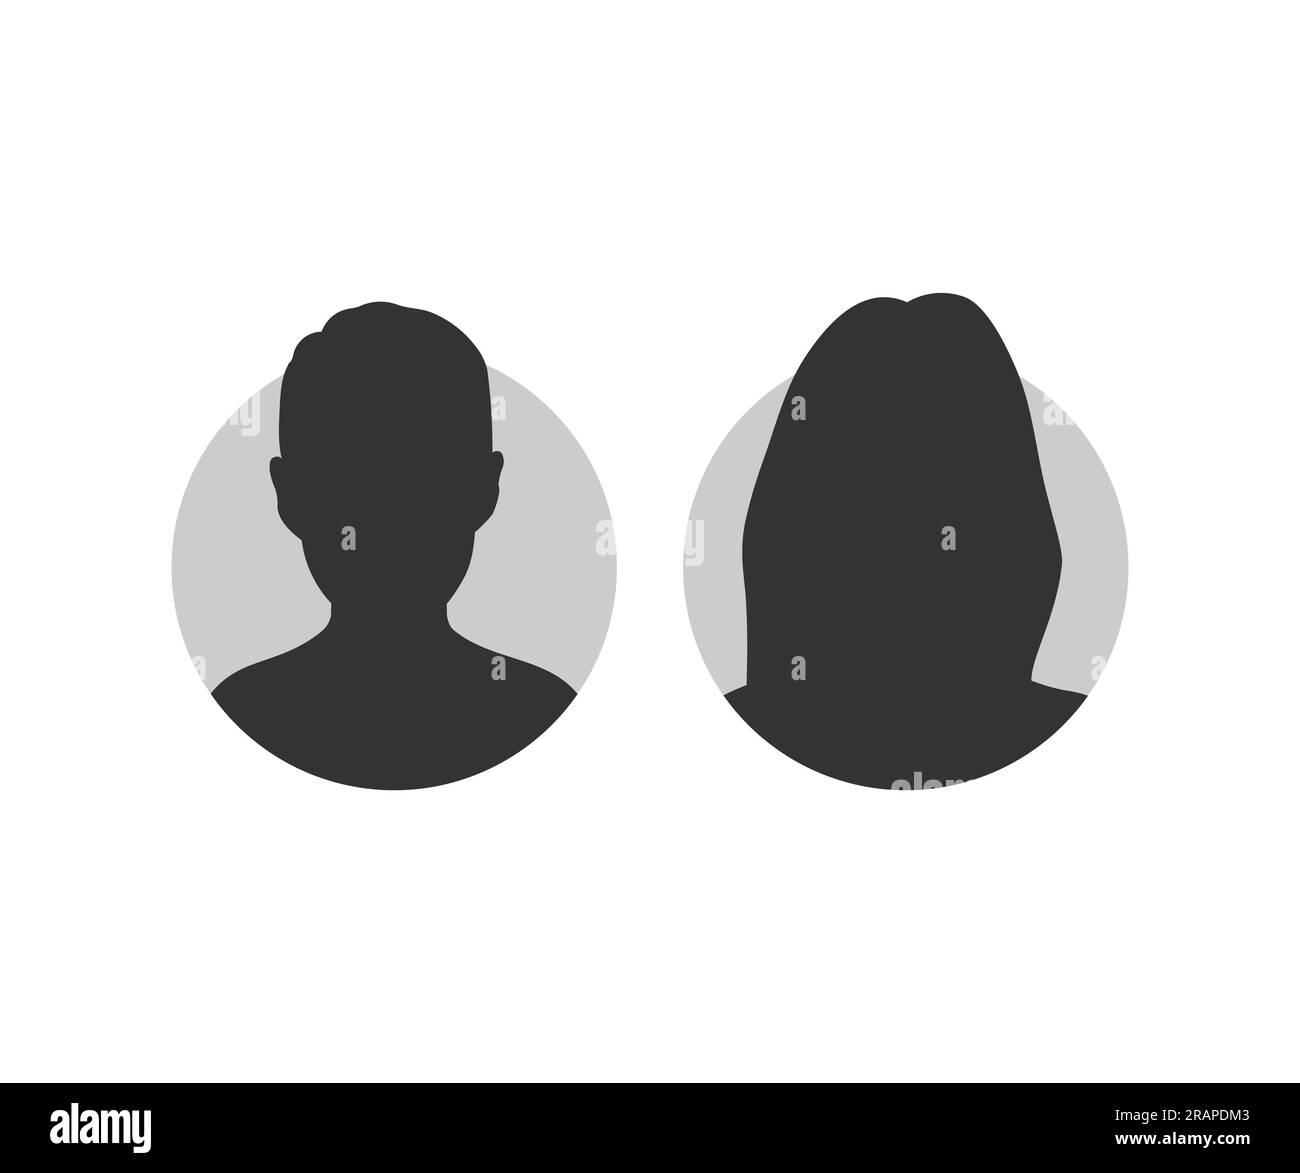 Männlicher und weiblicher Gesichtssilhouettenavatar. Profilsymbol. Avatarprofil von Mann und Frau. Vektordesign und Illustration einer unbekannten oder anonymen Person. Stock Vektor